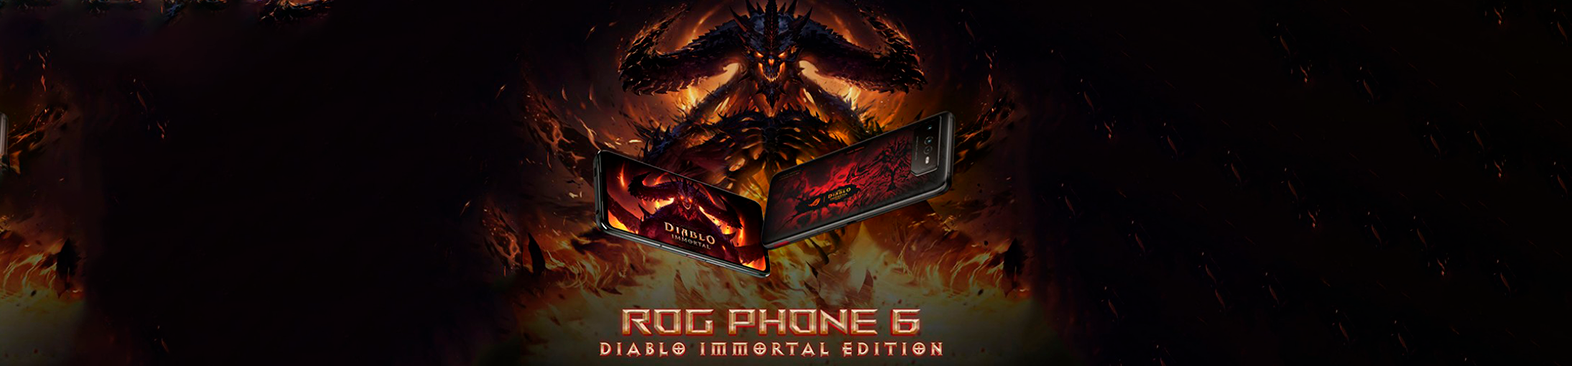 Rog phone diablo inmortal edition méxico